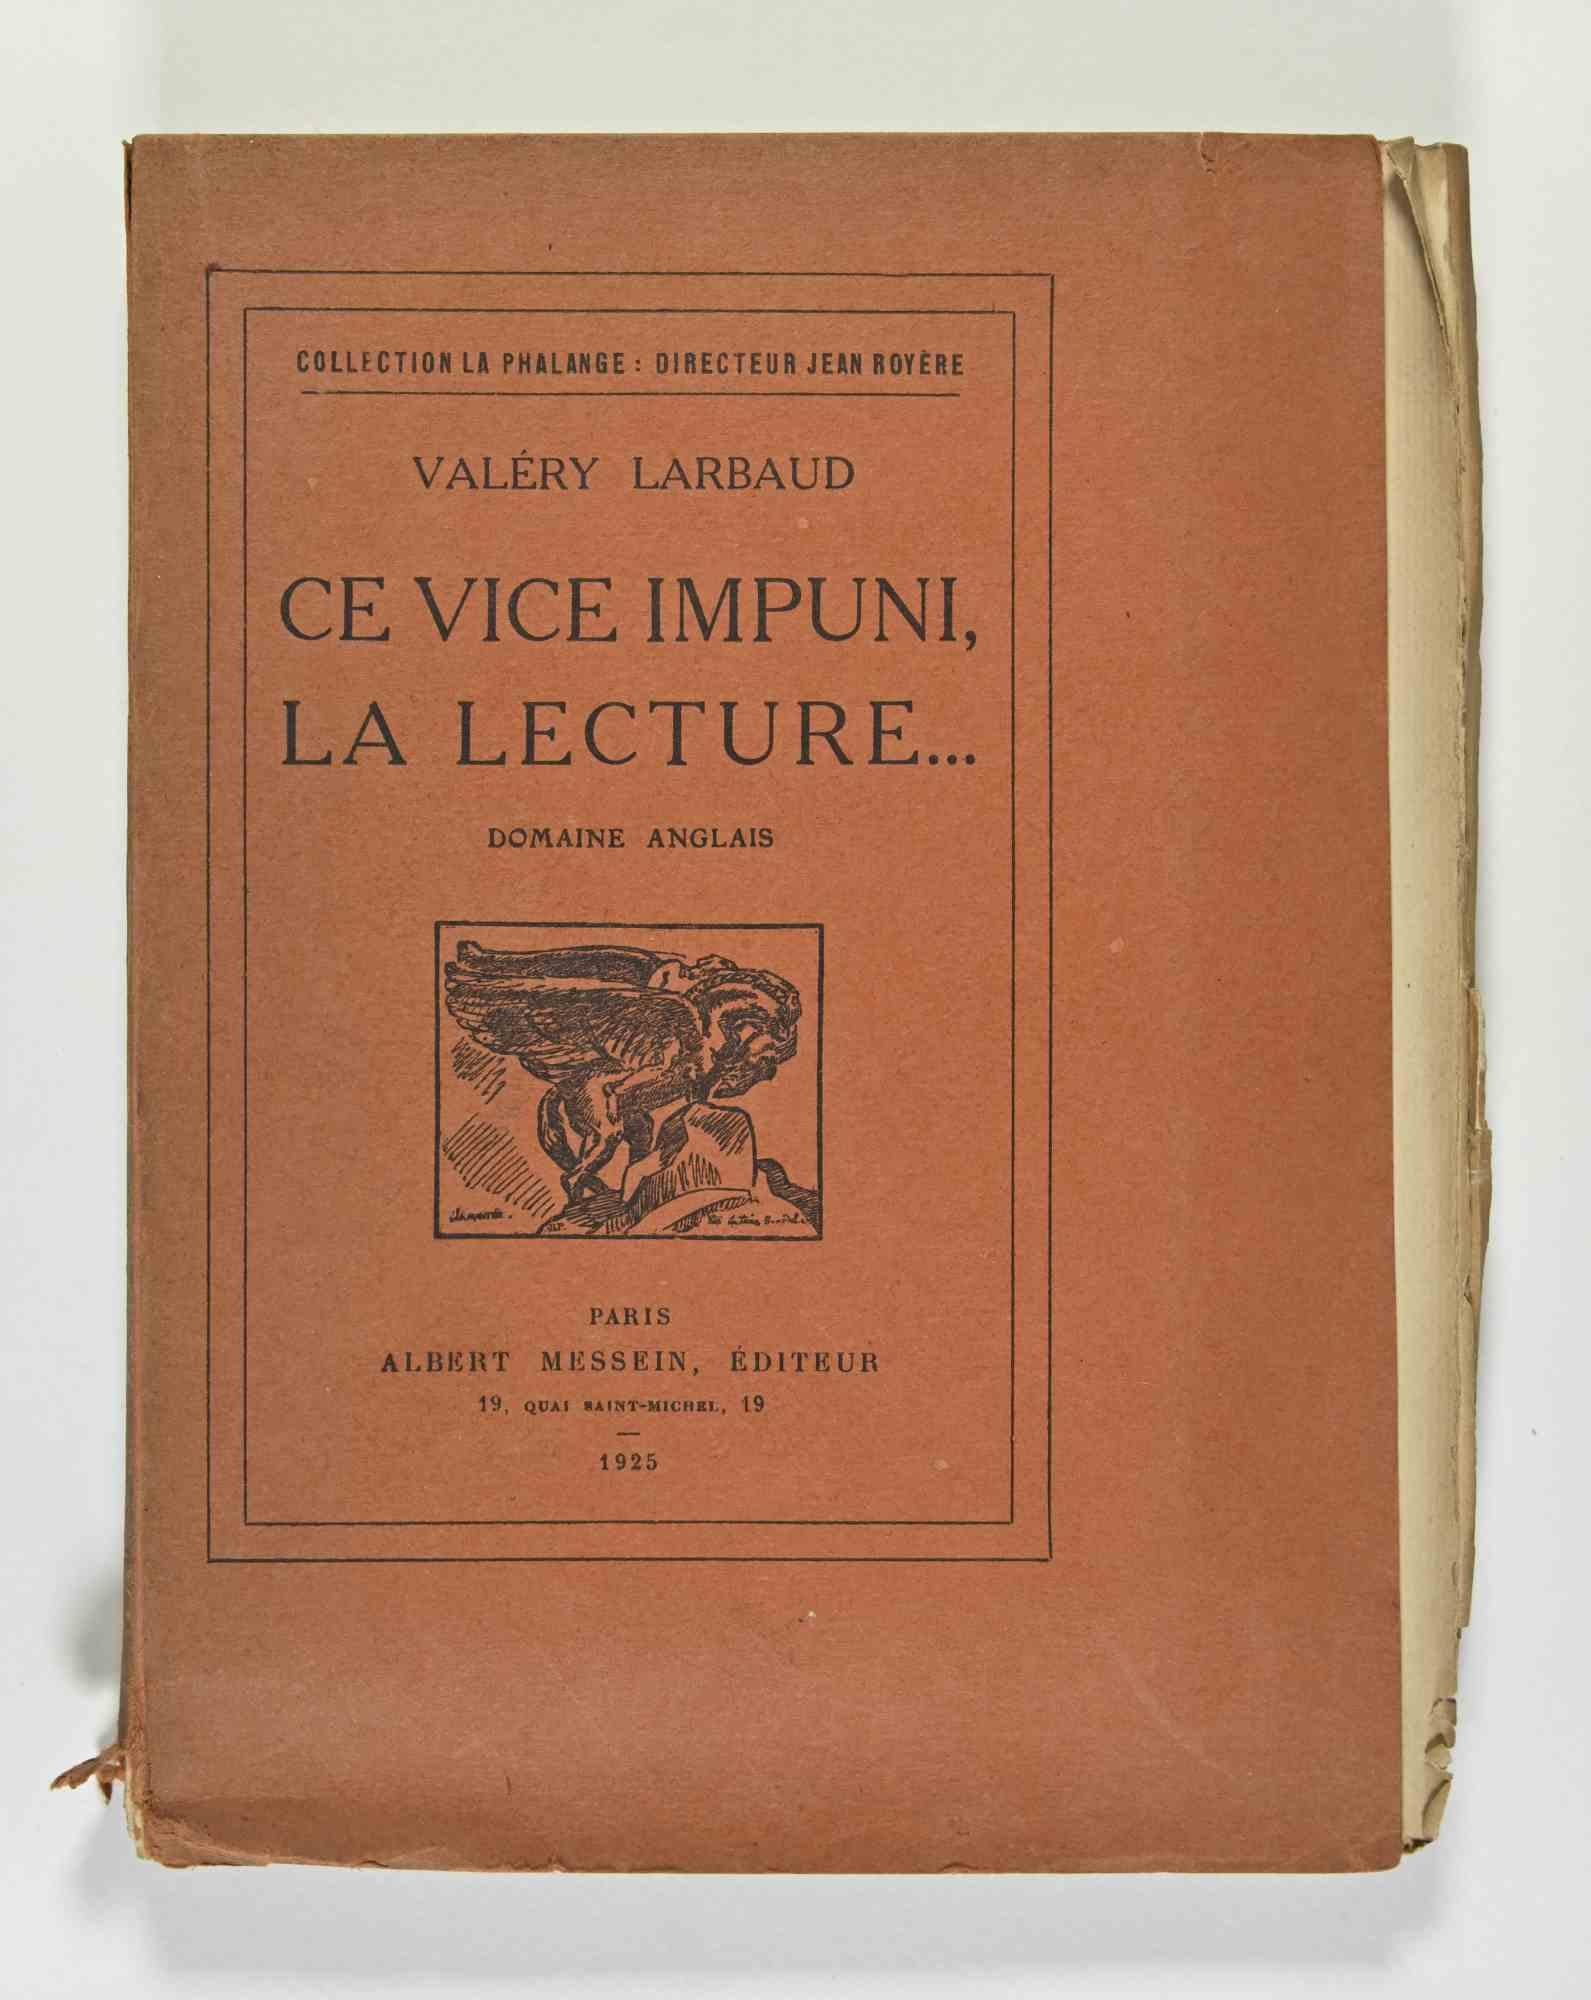 Ce vice impuni, la Lecture ist ein Buch von Valery Larbaud.

Collection La Phalange : Directeur Jean Royere.

Paris, Albert Messein, Editeur, 1925.

Guter Zustand, mit Ausnahme einiger Vergilbungen und beschädigter Blattränder. 